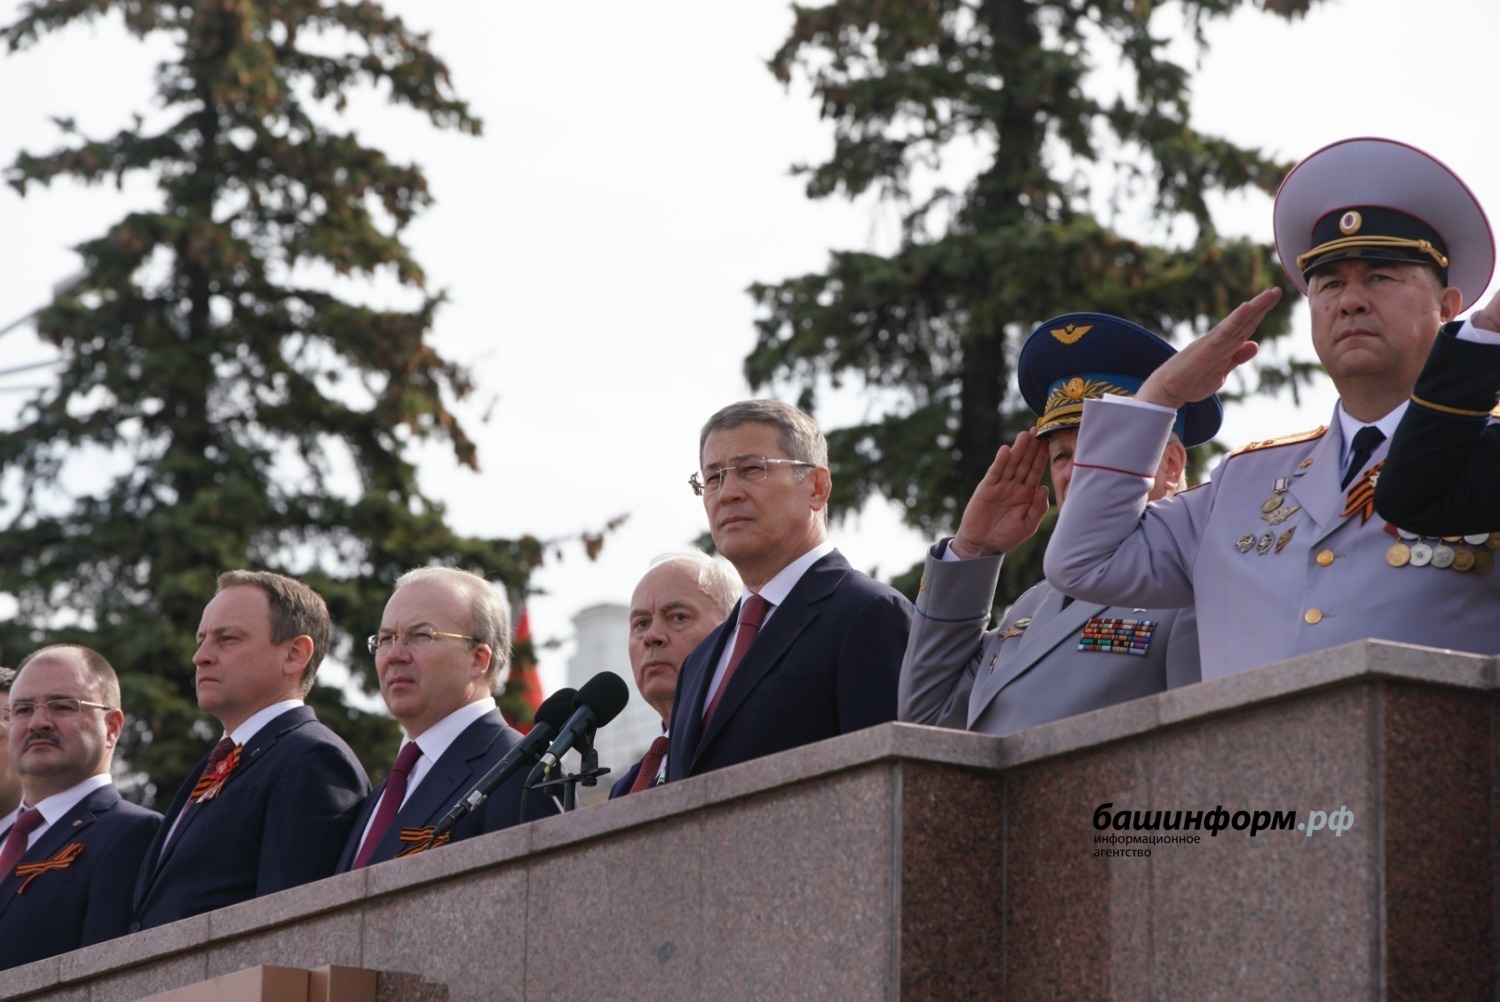 Равняться на подвиги героев-фронтовиков: в Уфе состоялся парад в честь 77-летия Великой Победы